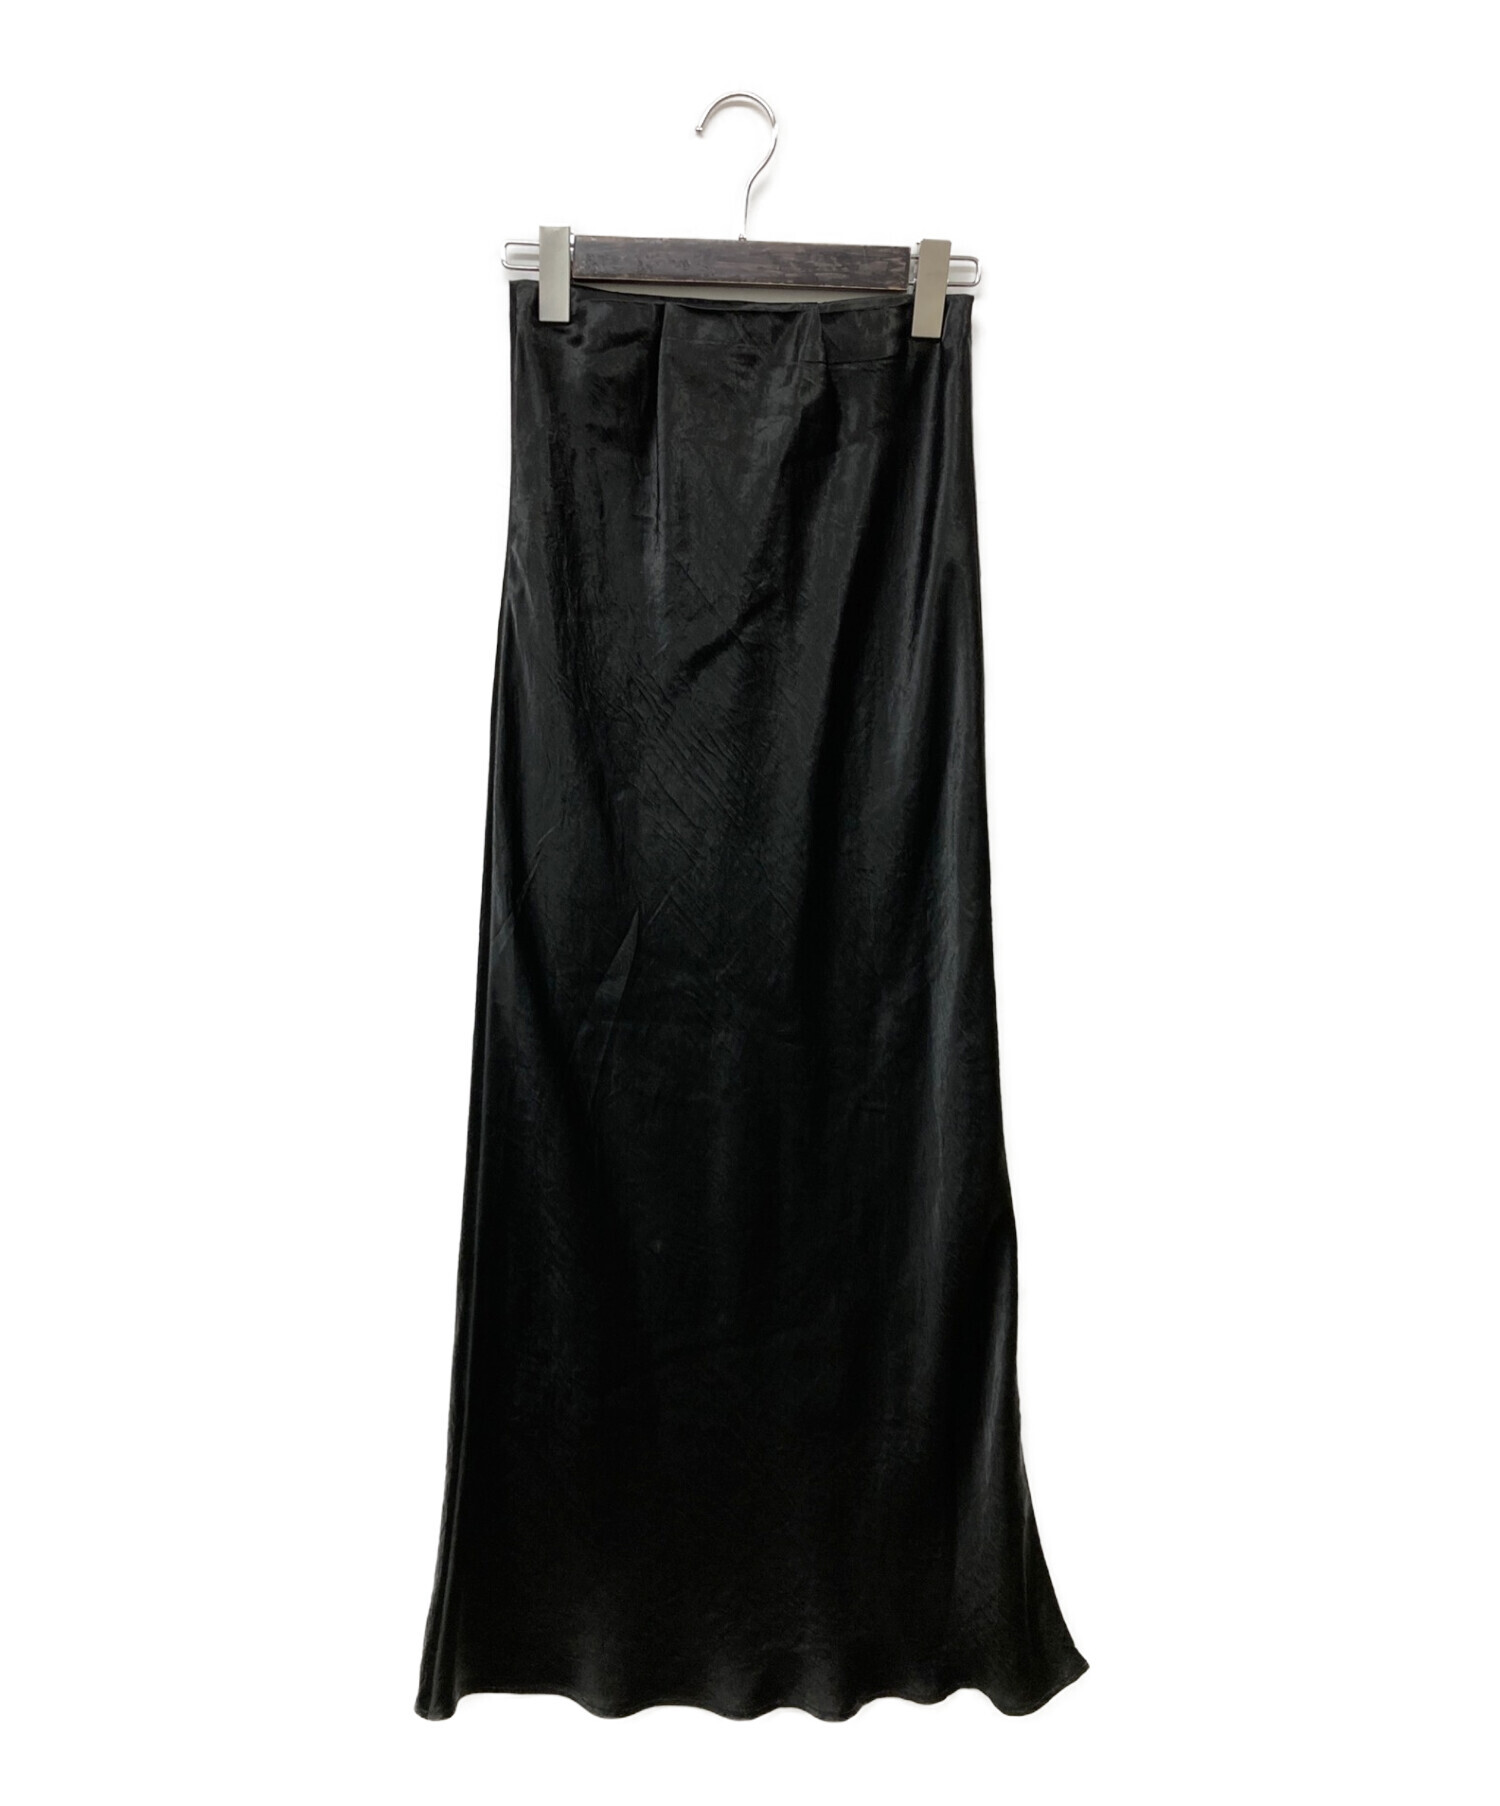 レディースenof ace long skirt ロングスカート black ブラック